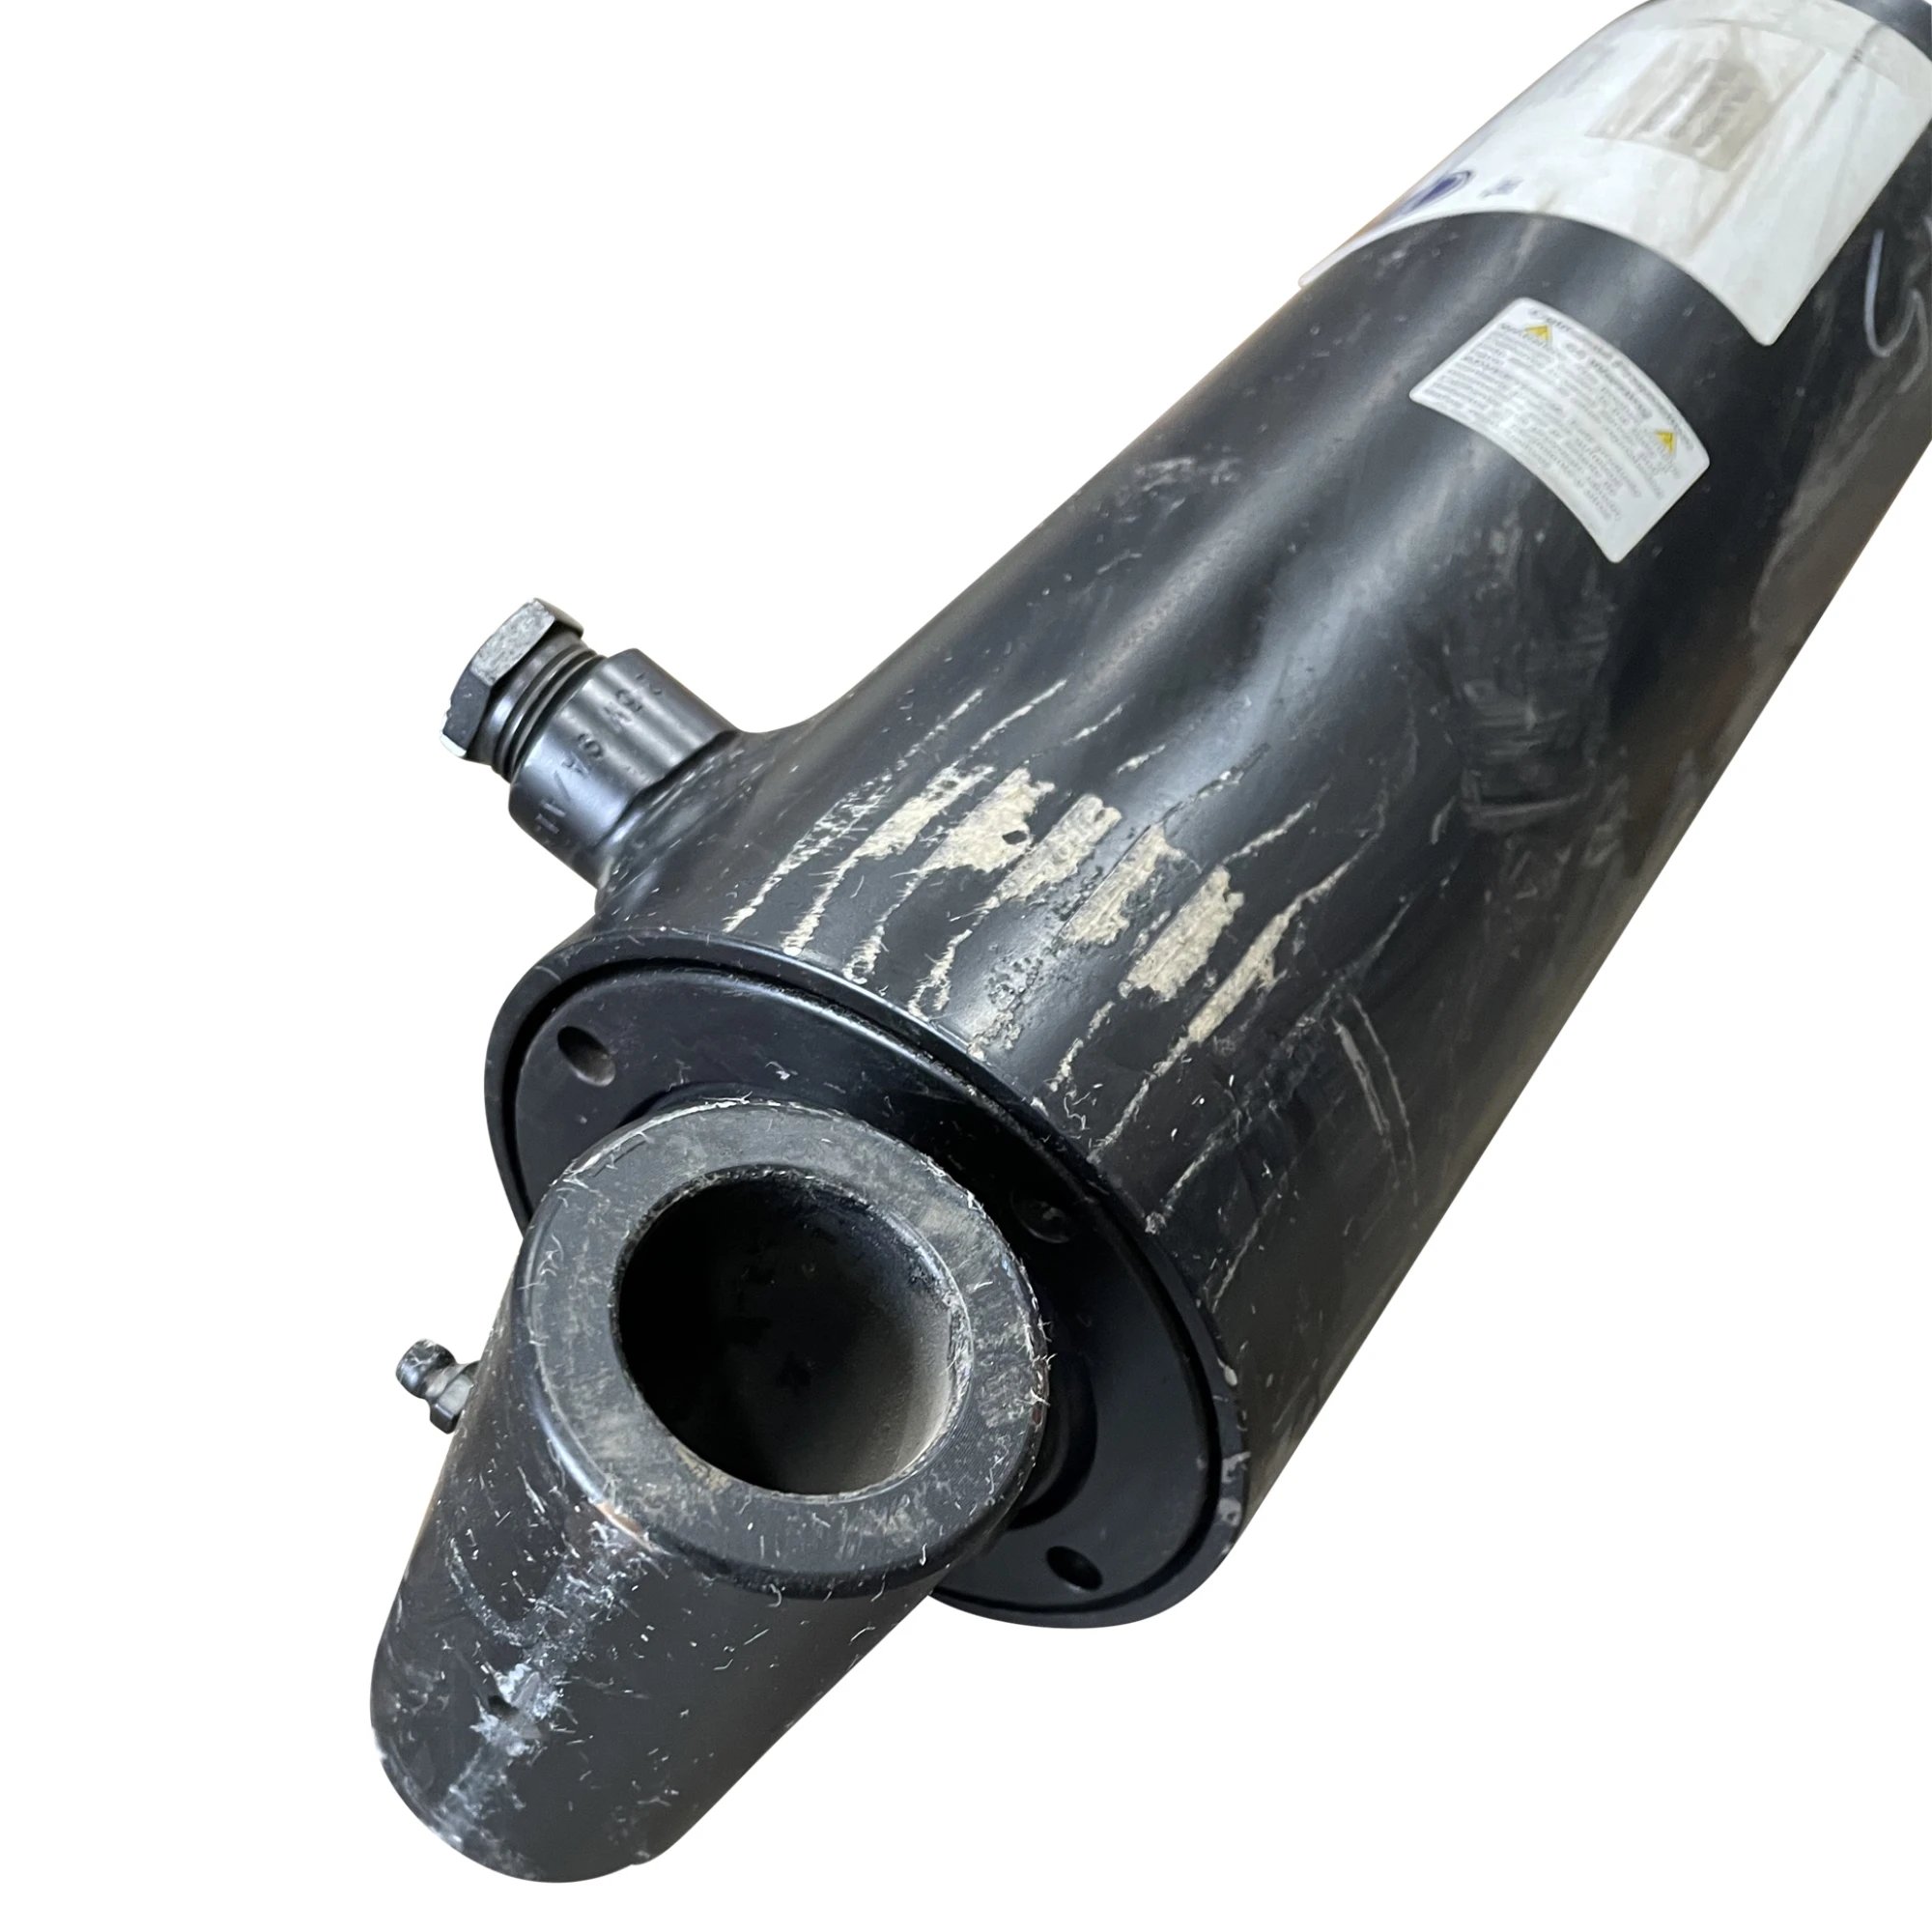 Galbreath™ Hydraulic Bypass Cylinder (4" X 2.5" X 40")